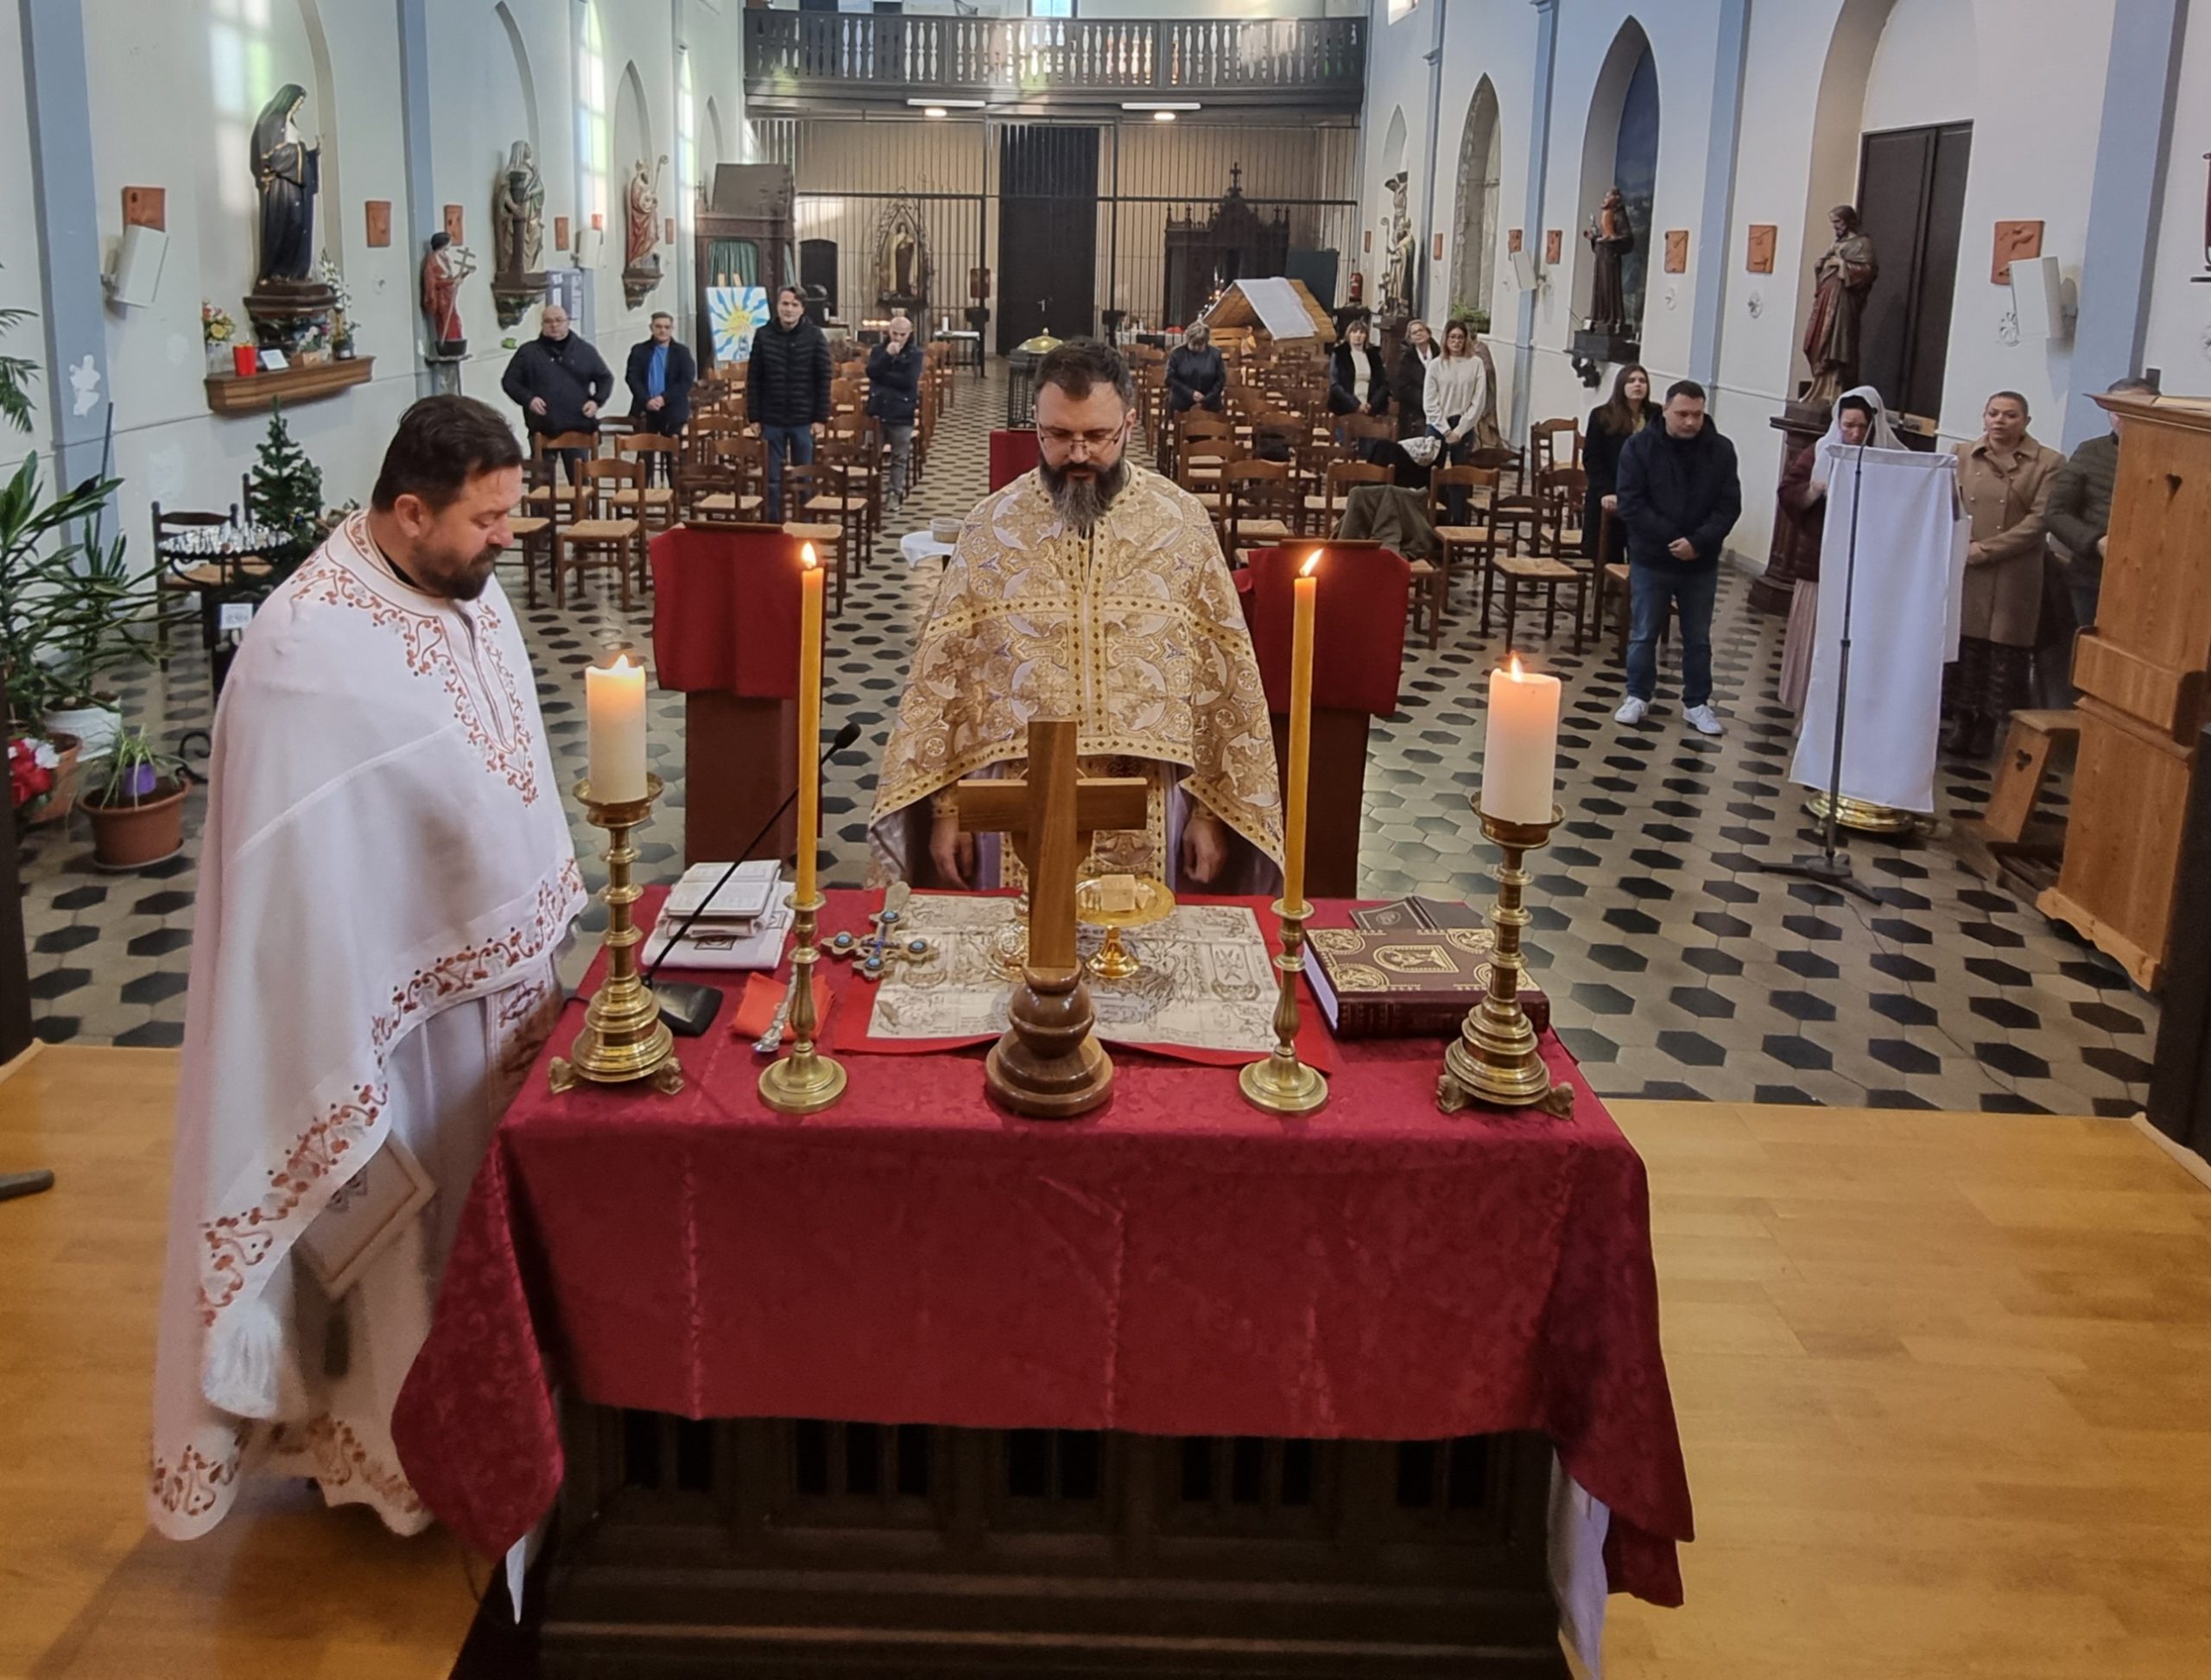 Прва литургија у граду Charleroi – Белгијски регион Валонија